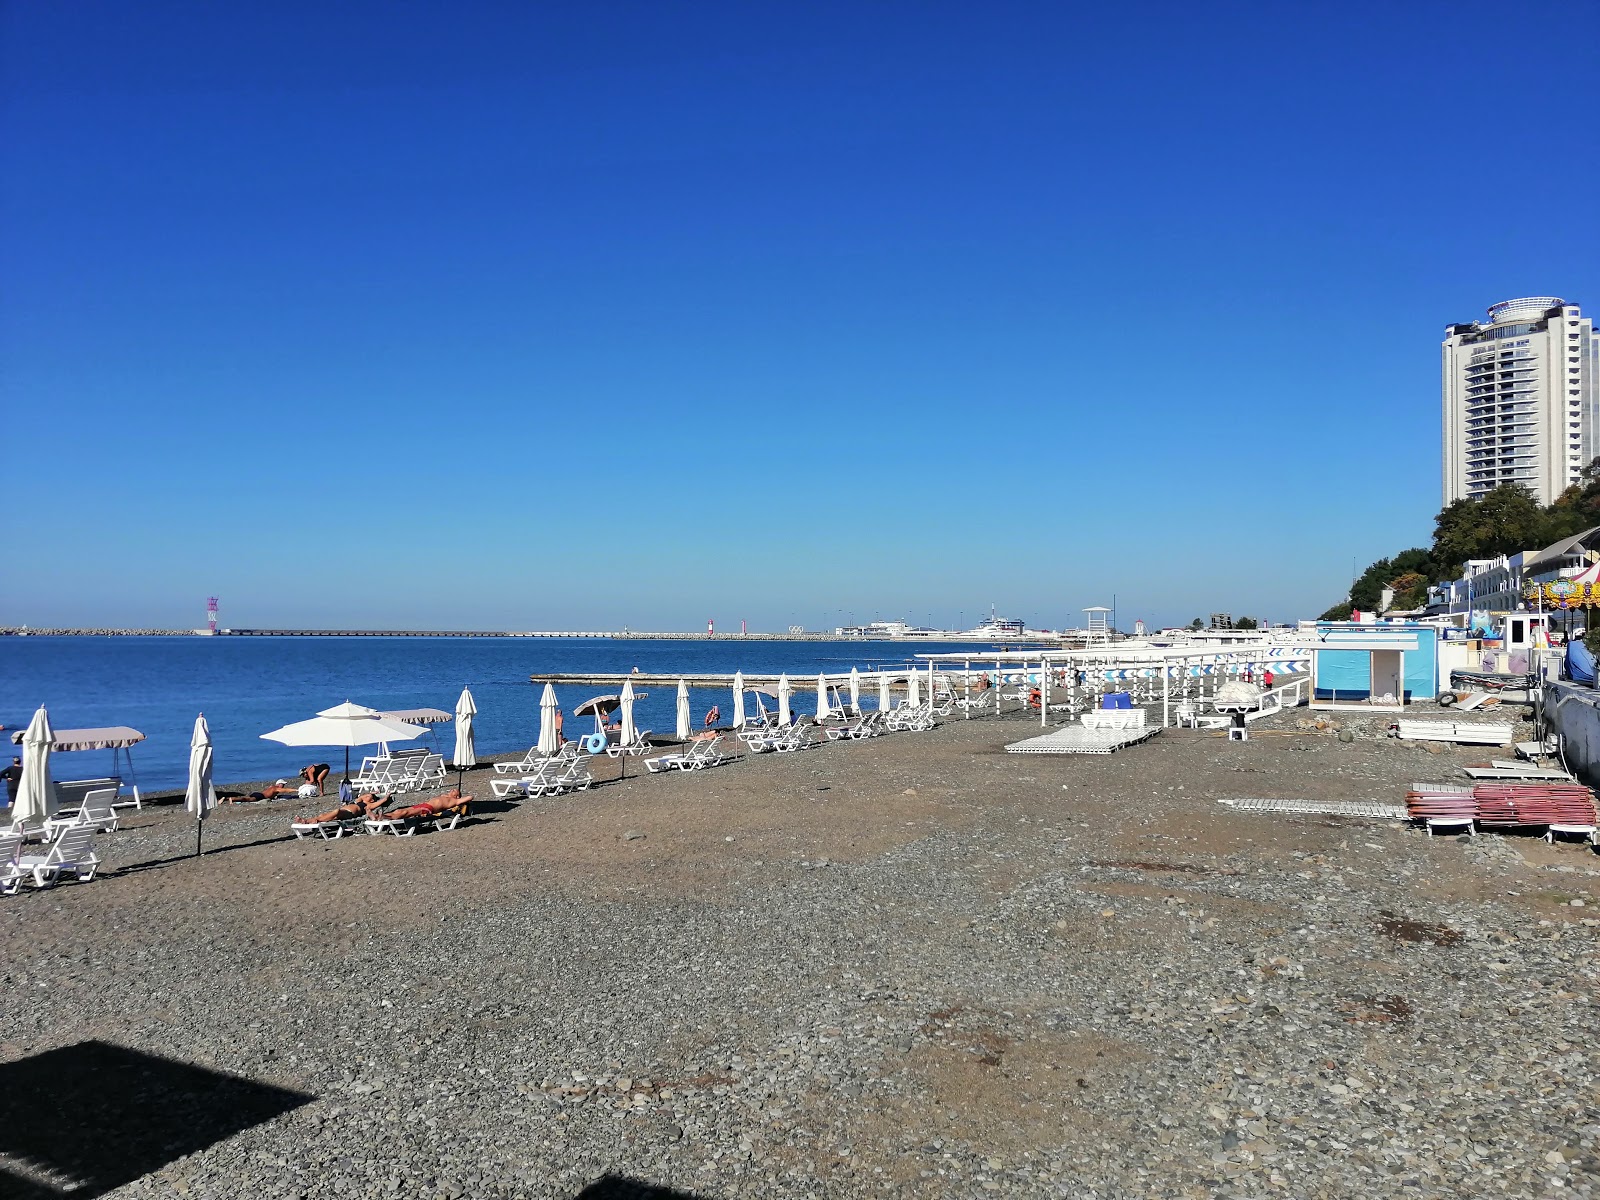 Primorsky beach'in fotoğrafı çok temiz temizlik seviyesi ile